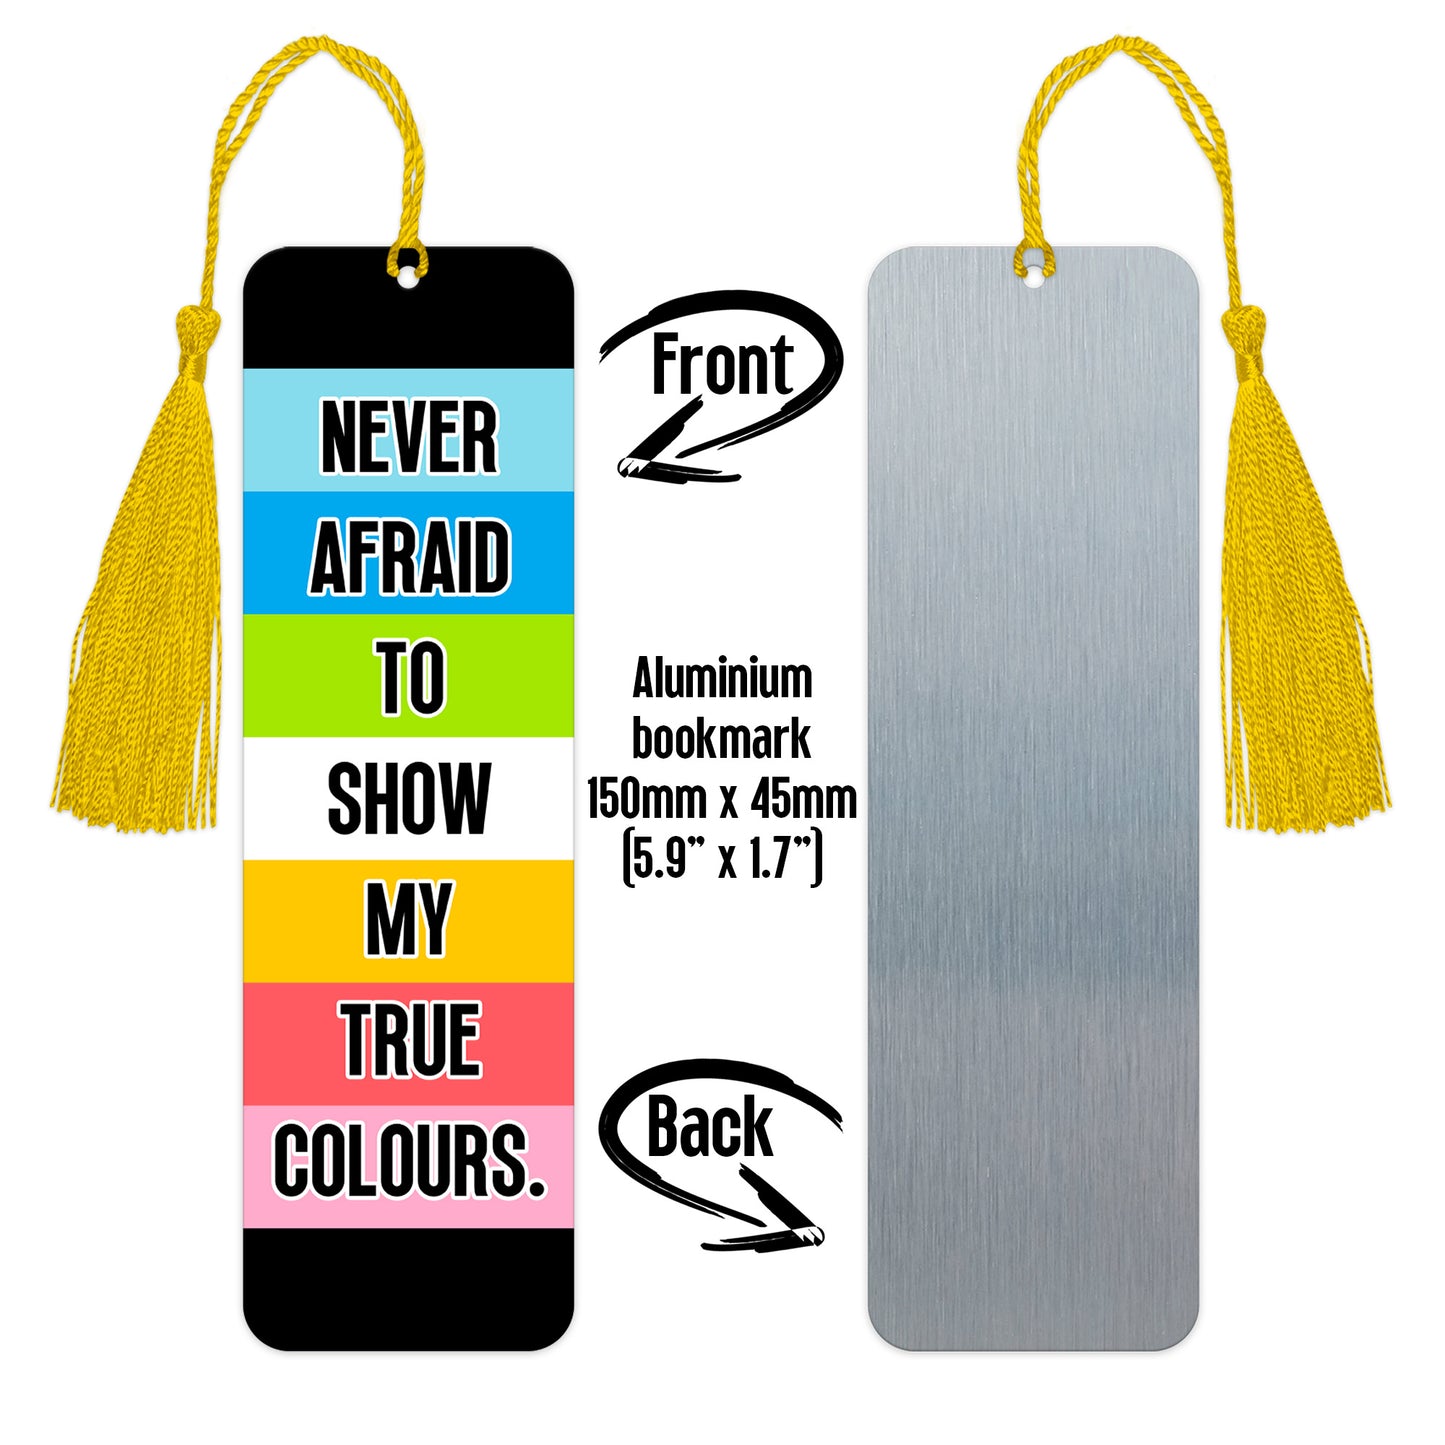 Queer pride luxury aluminium bookmark never afraid to show my true colours